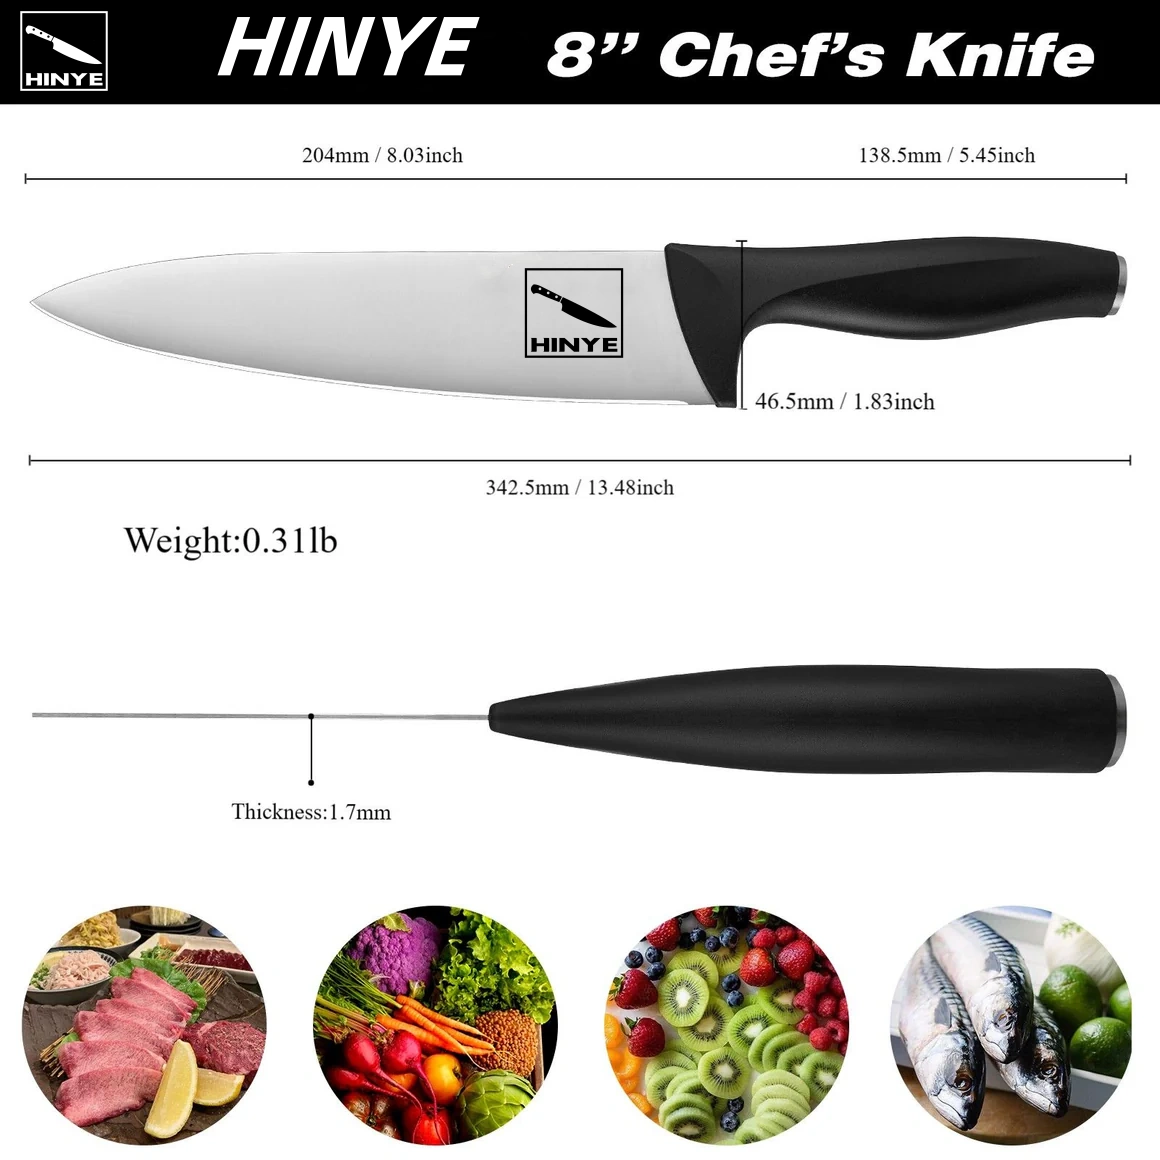 Hinye-Acciaio 8" Chef